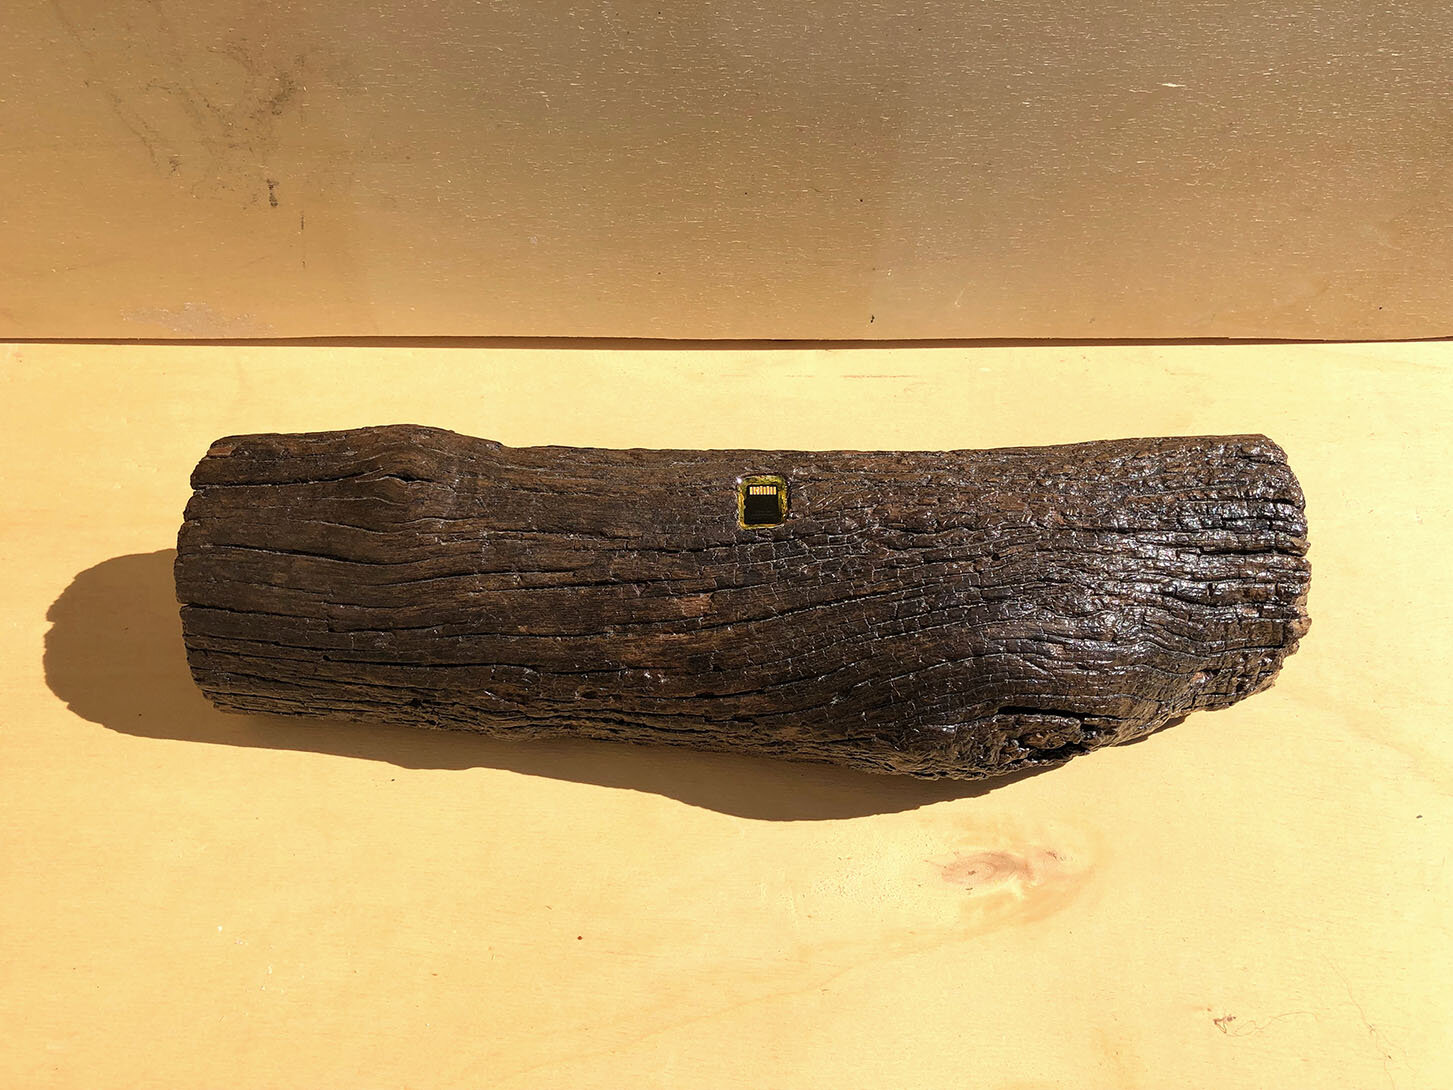 Virgilio rospigliosi Legno di Rembrandt. 2018. Cm 38x10x8, tronco di legno, memory card con all'interno l'immagine smaterializzata del tronco di legno.jpg